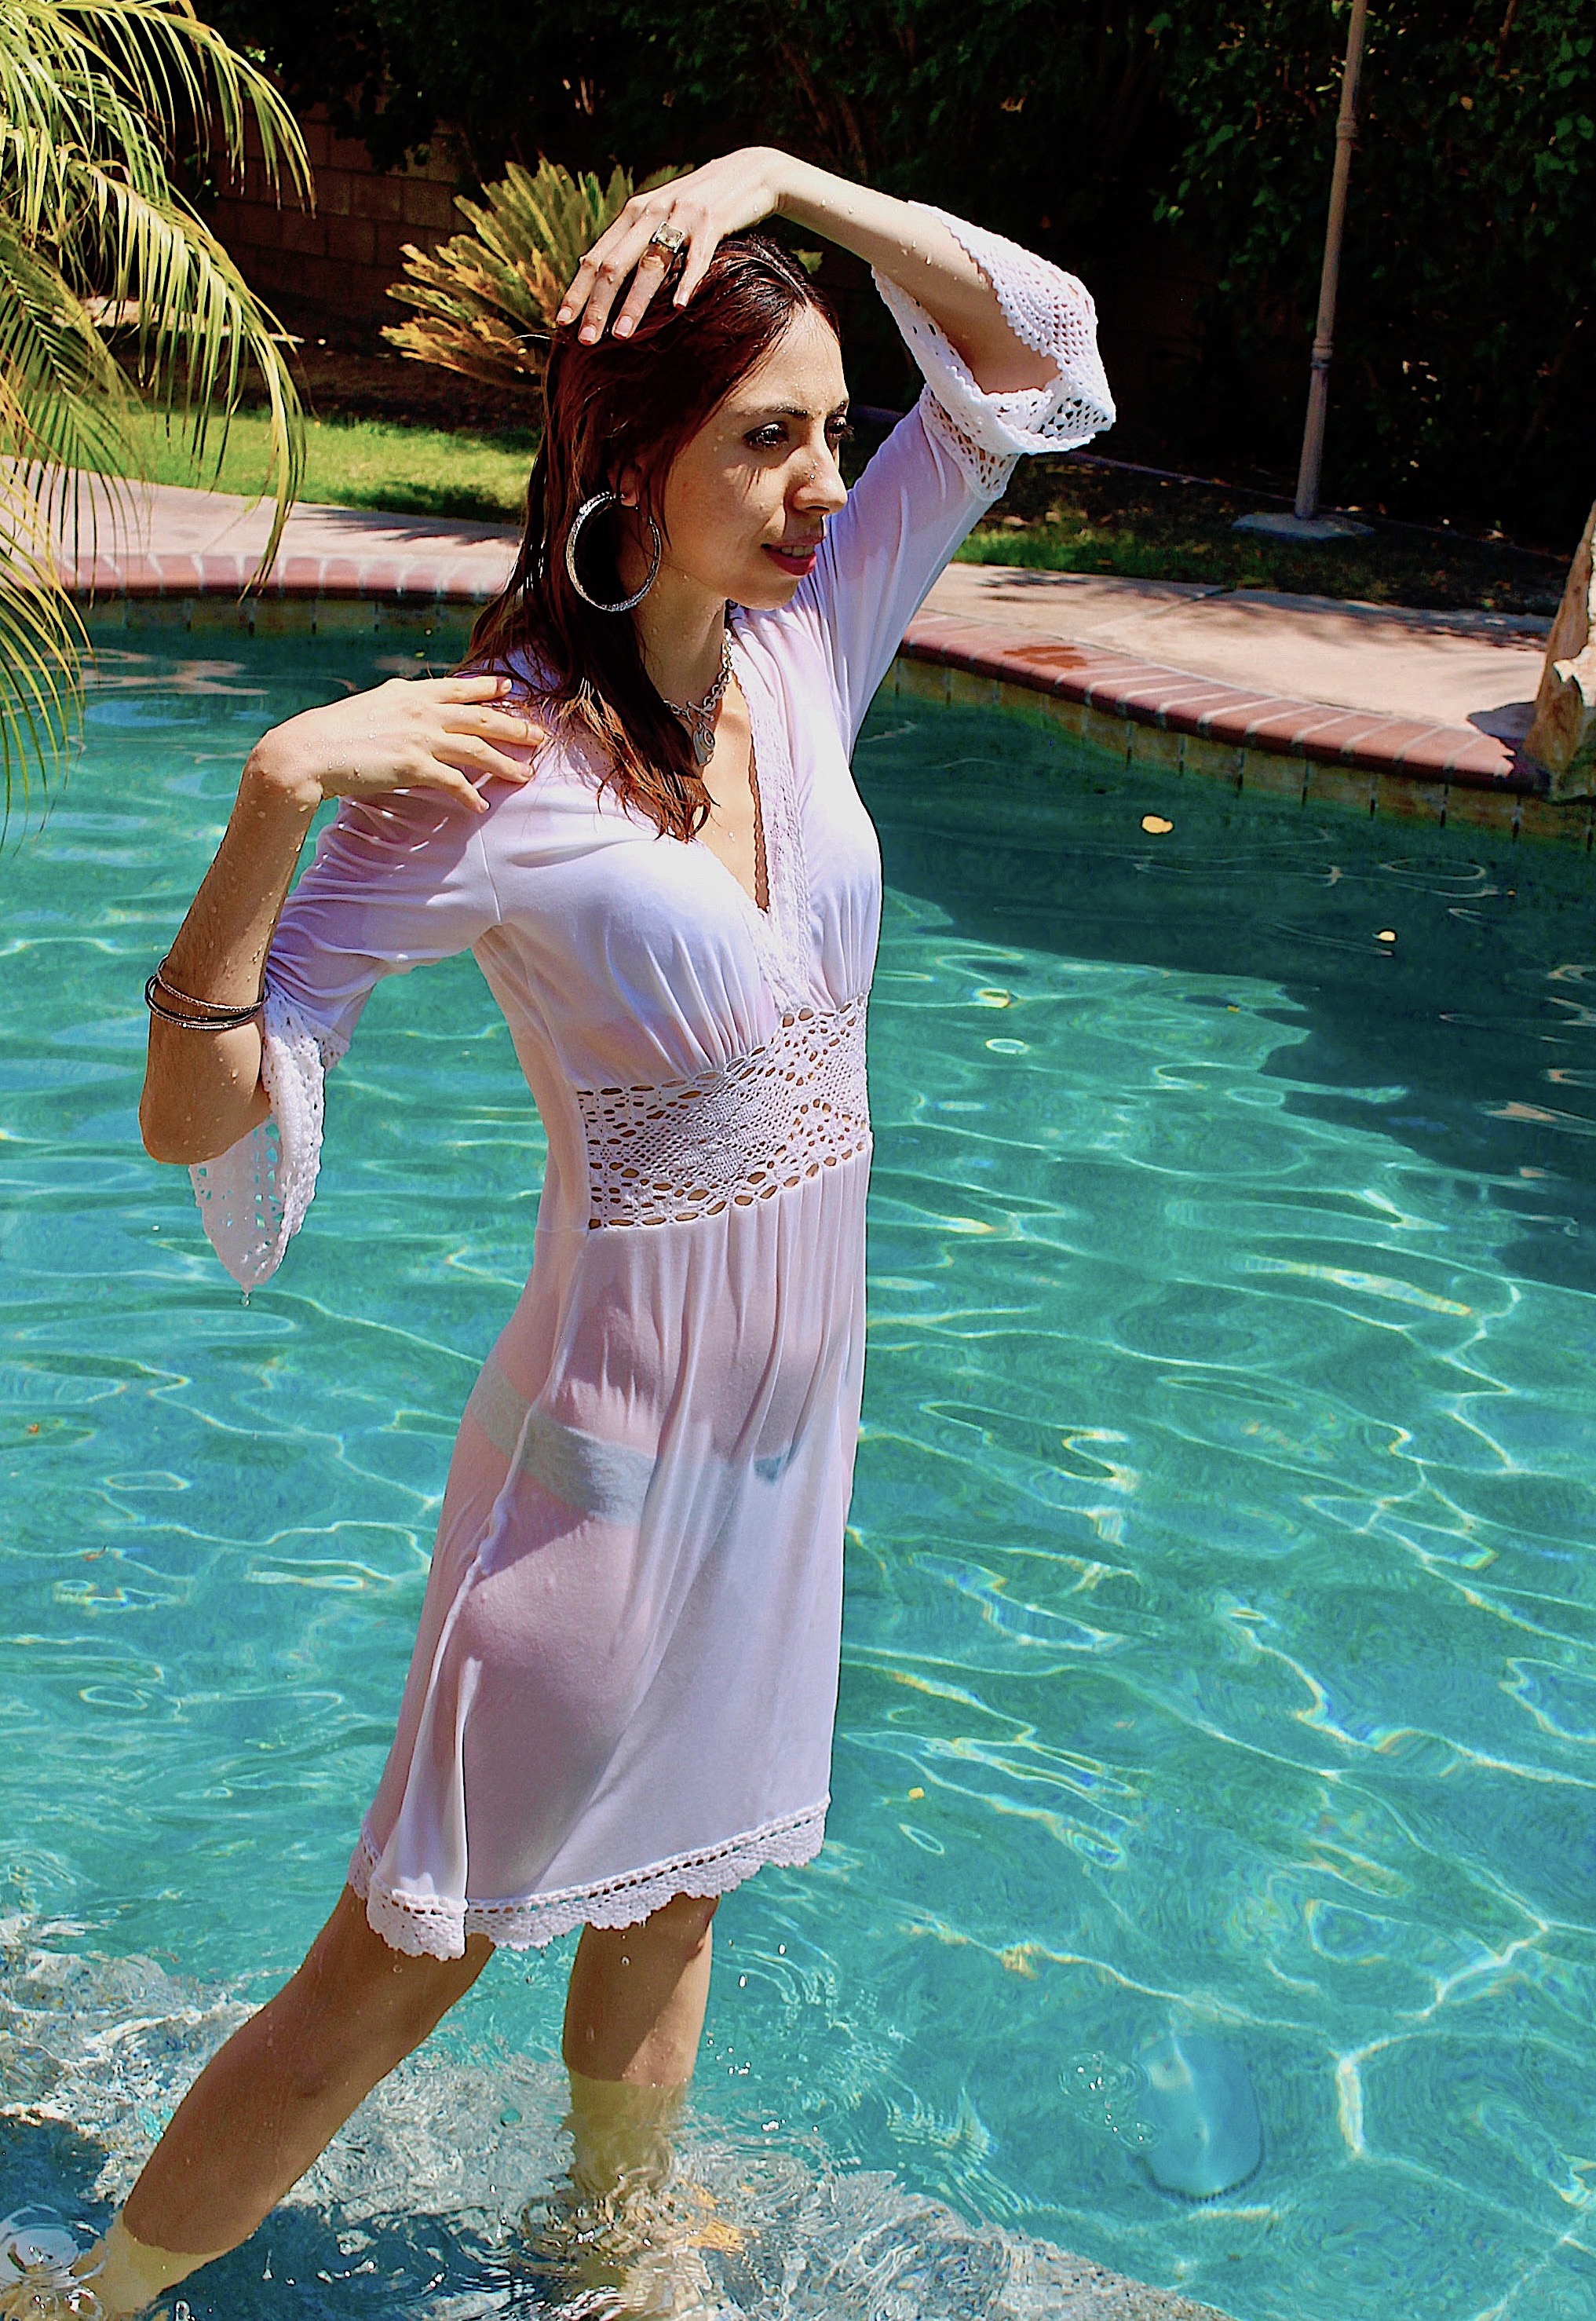 Wwf 76508 Video Selena Wet White Dress In Pool Wetlook World Forum V5 0